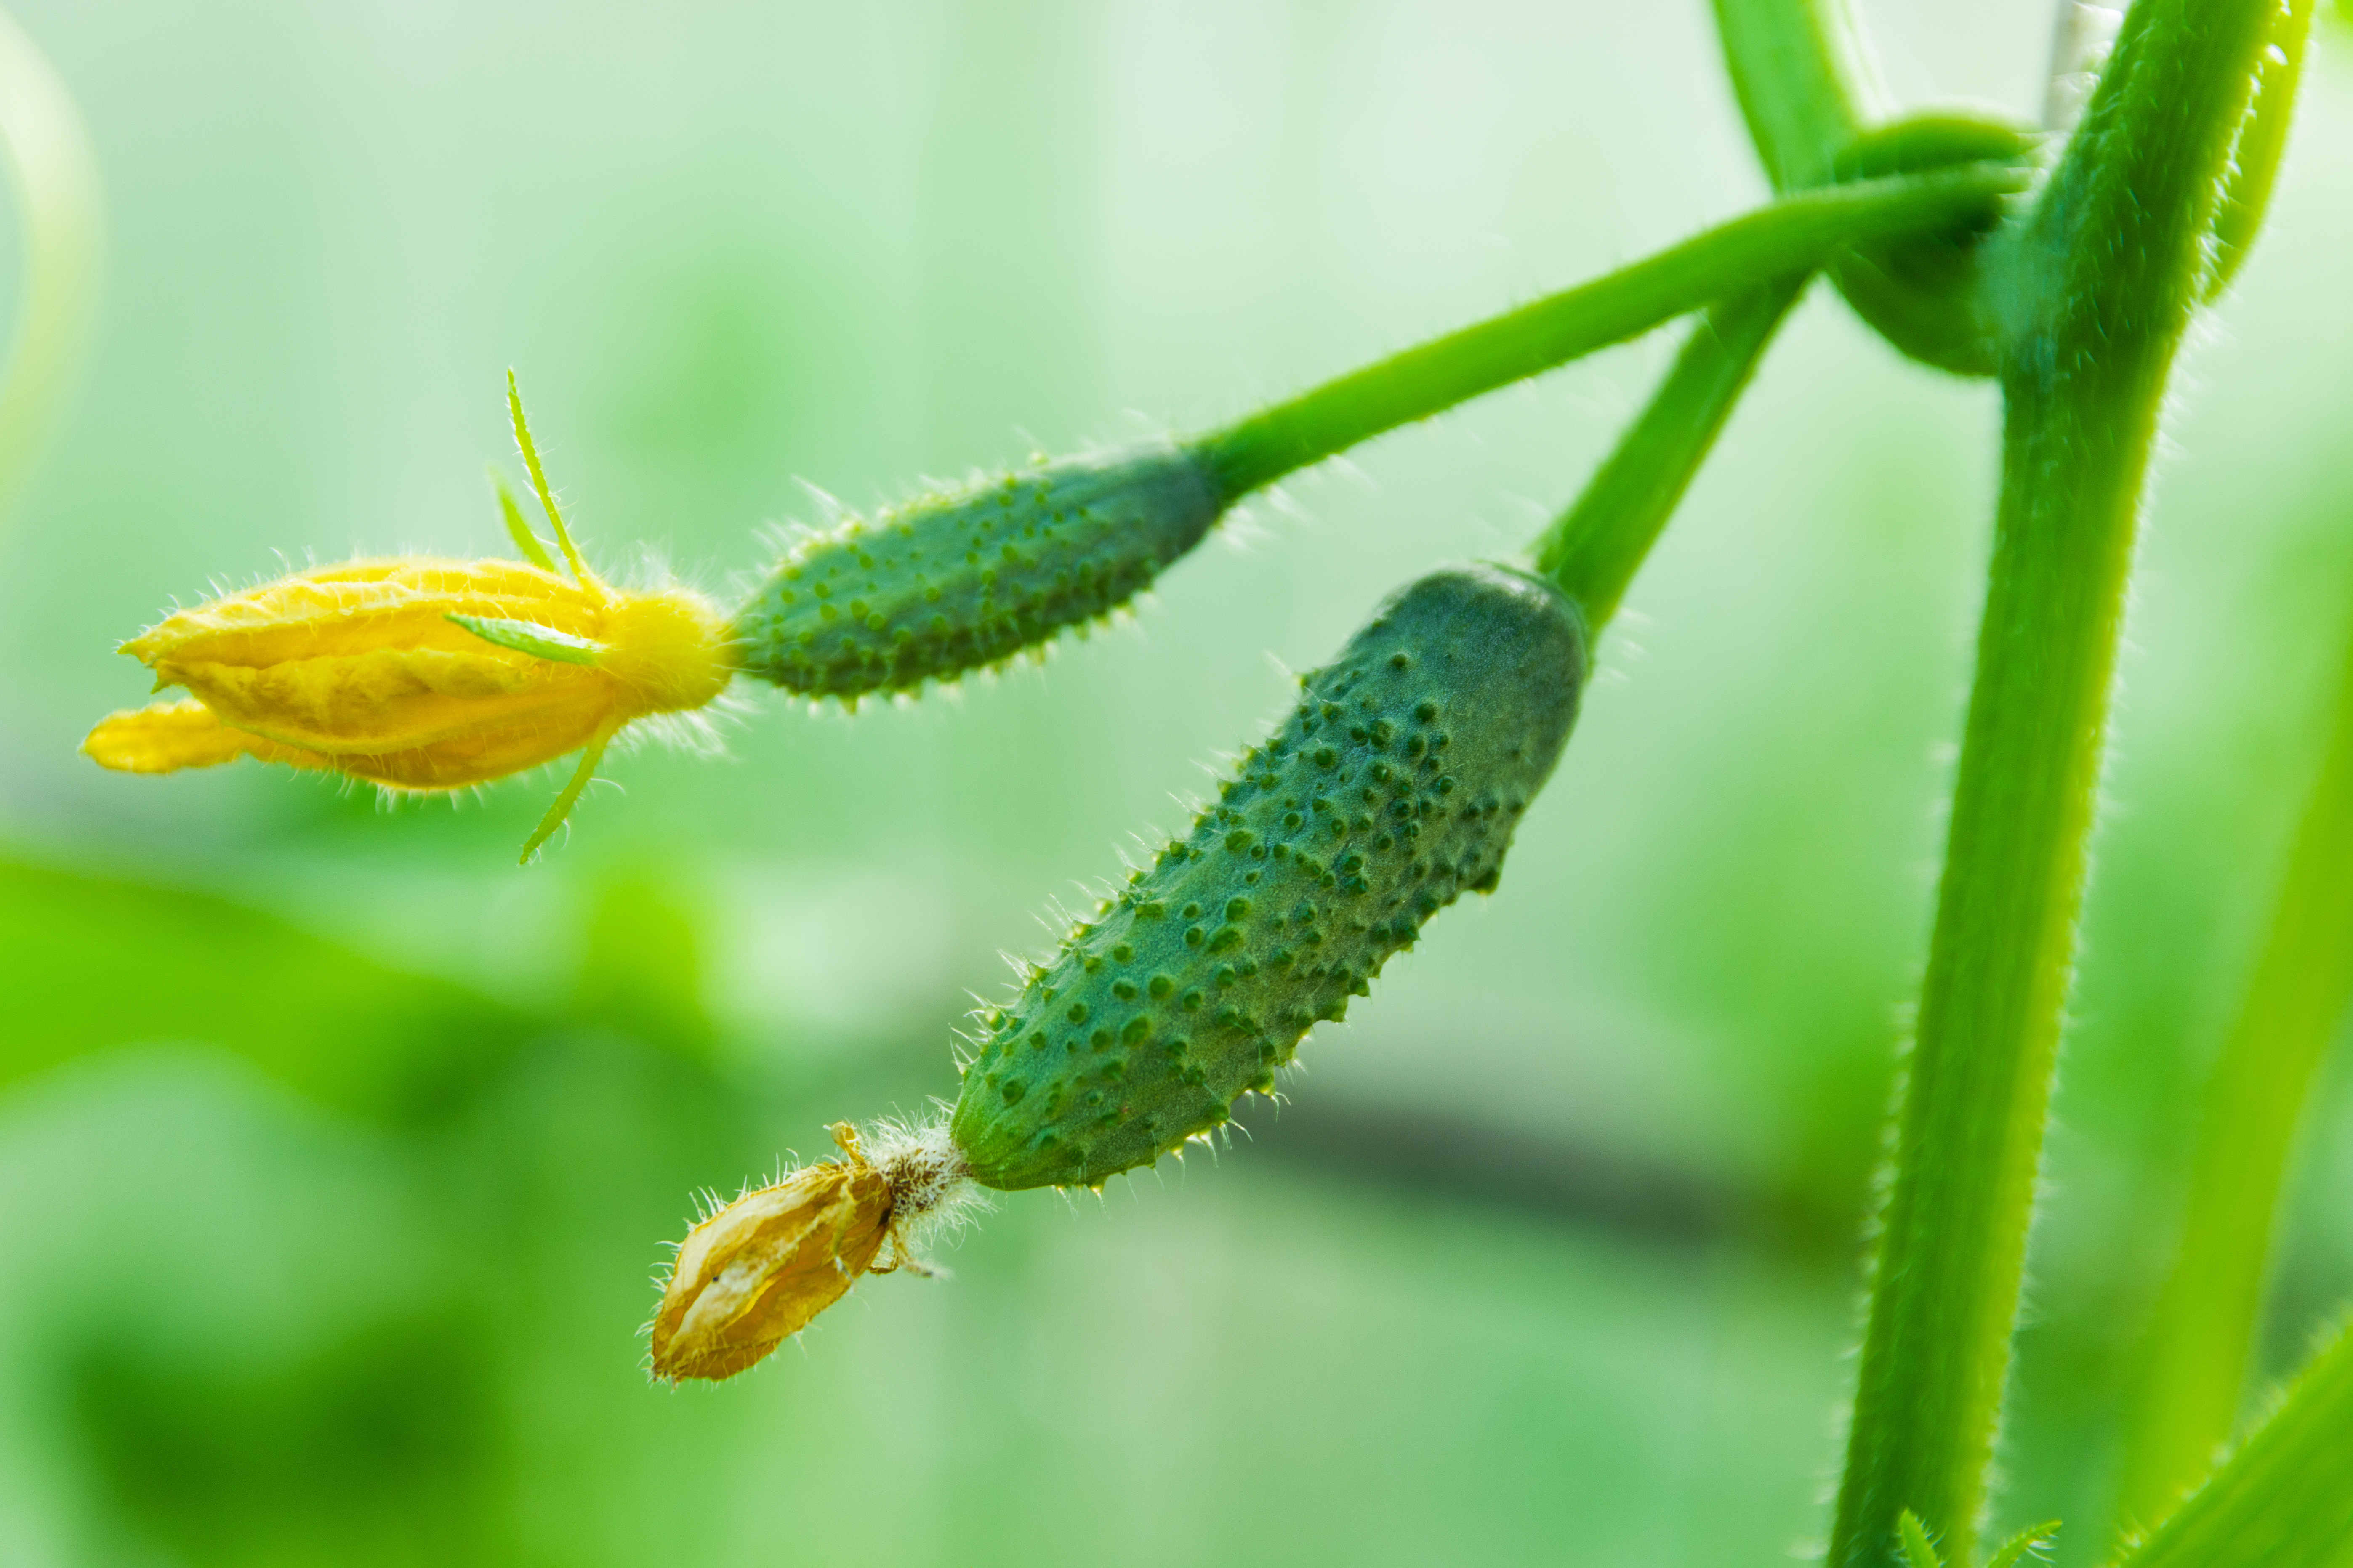 Envie de réaliser vos propres bocaux de cornichons ? Plantation, entretien, récolte, découvrez comment cultiver ce mini-concombre dans votre jardin ! Copyright (c) 2021 Svett/Shutterstock.